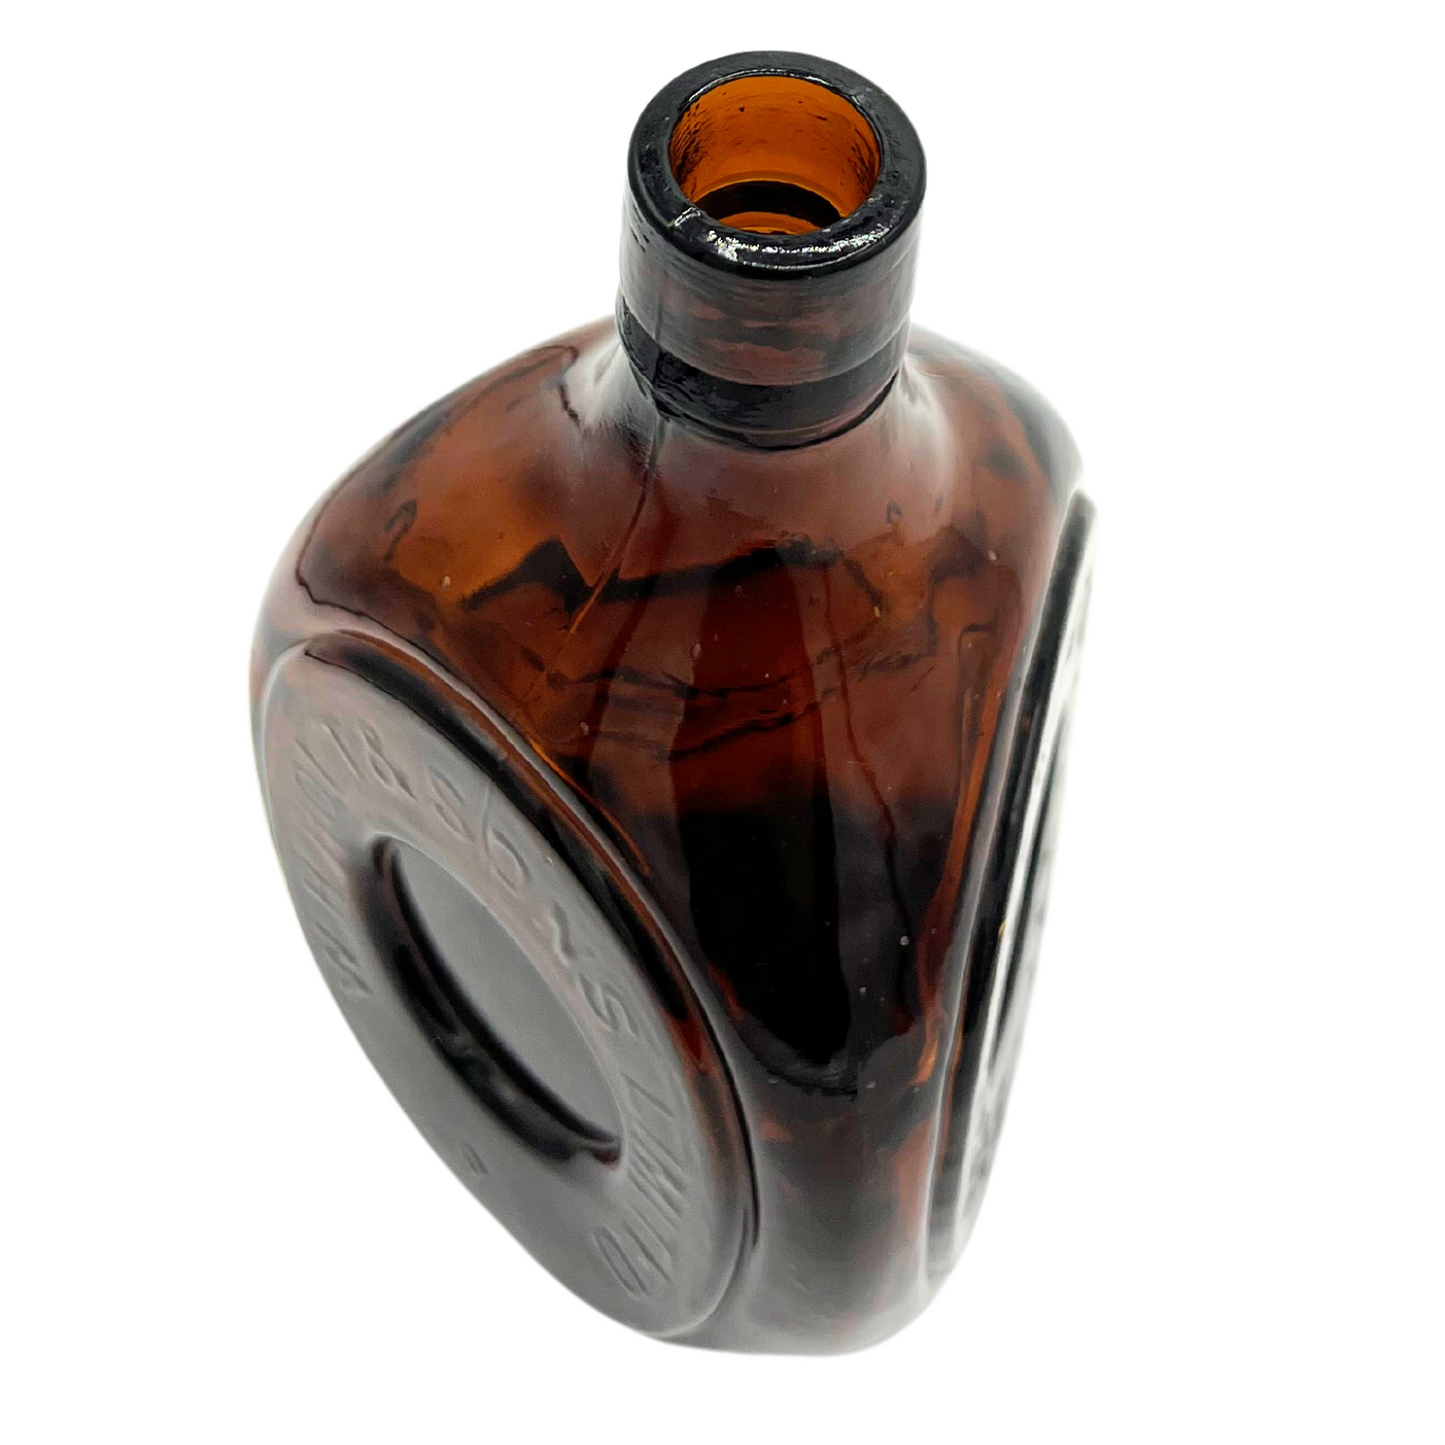 antique amber Aberlour Glenlivet bottle